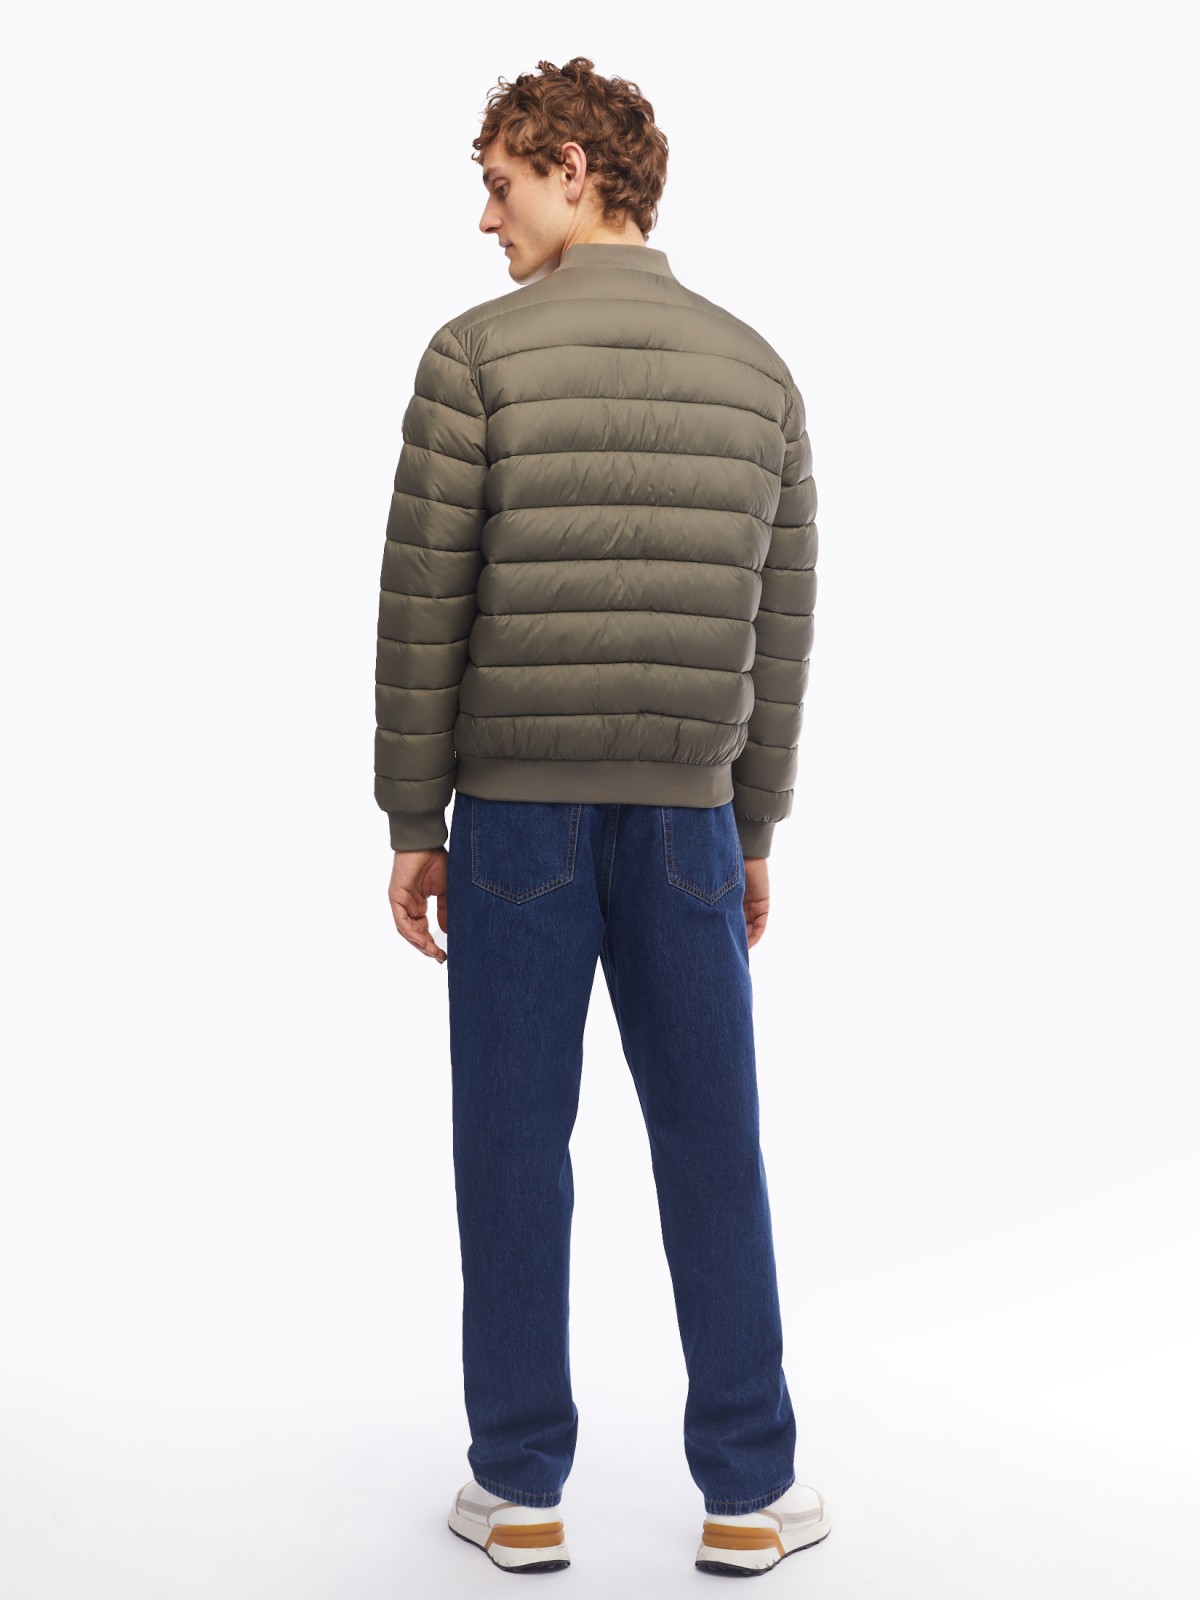 Лёгкая утеплённая куртка-бомбер с воротником-стойкой zolla 014125102104, цвет хаки, размер M - фото 6